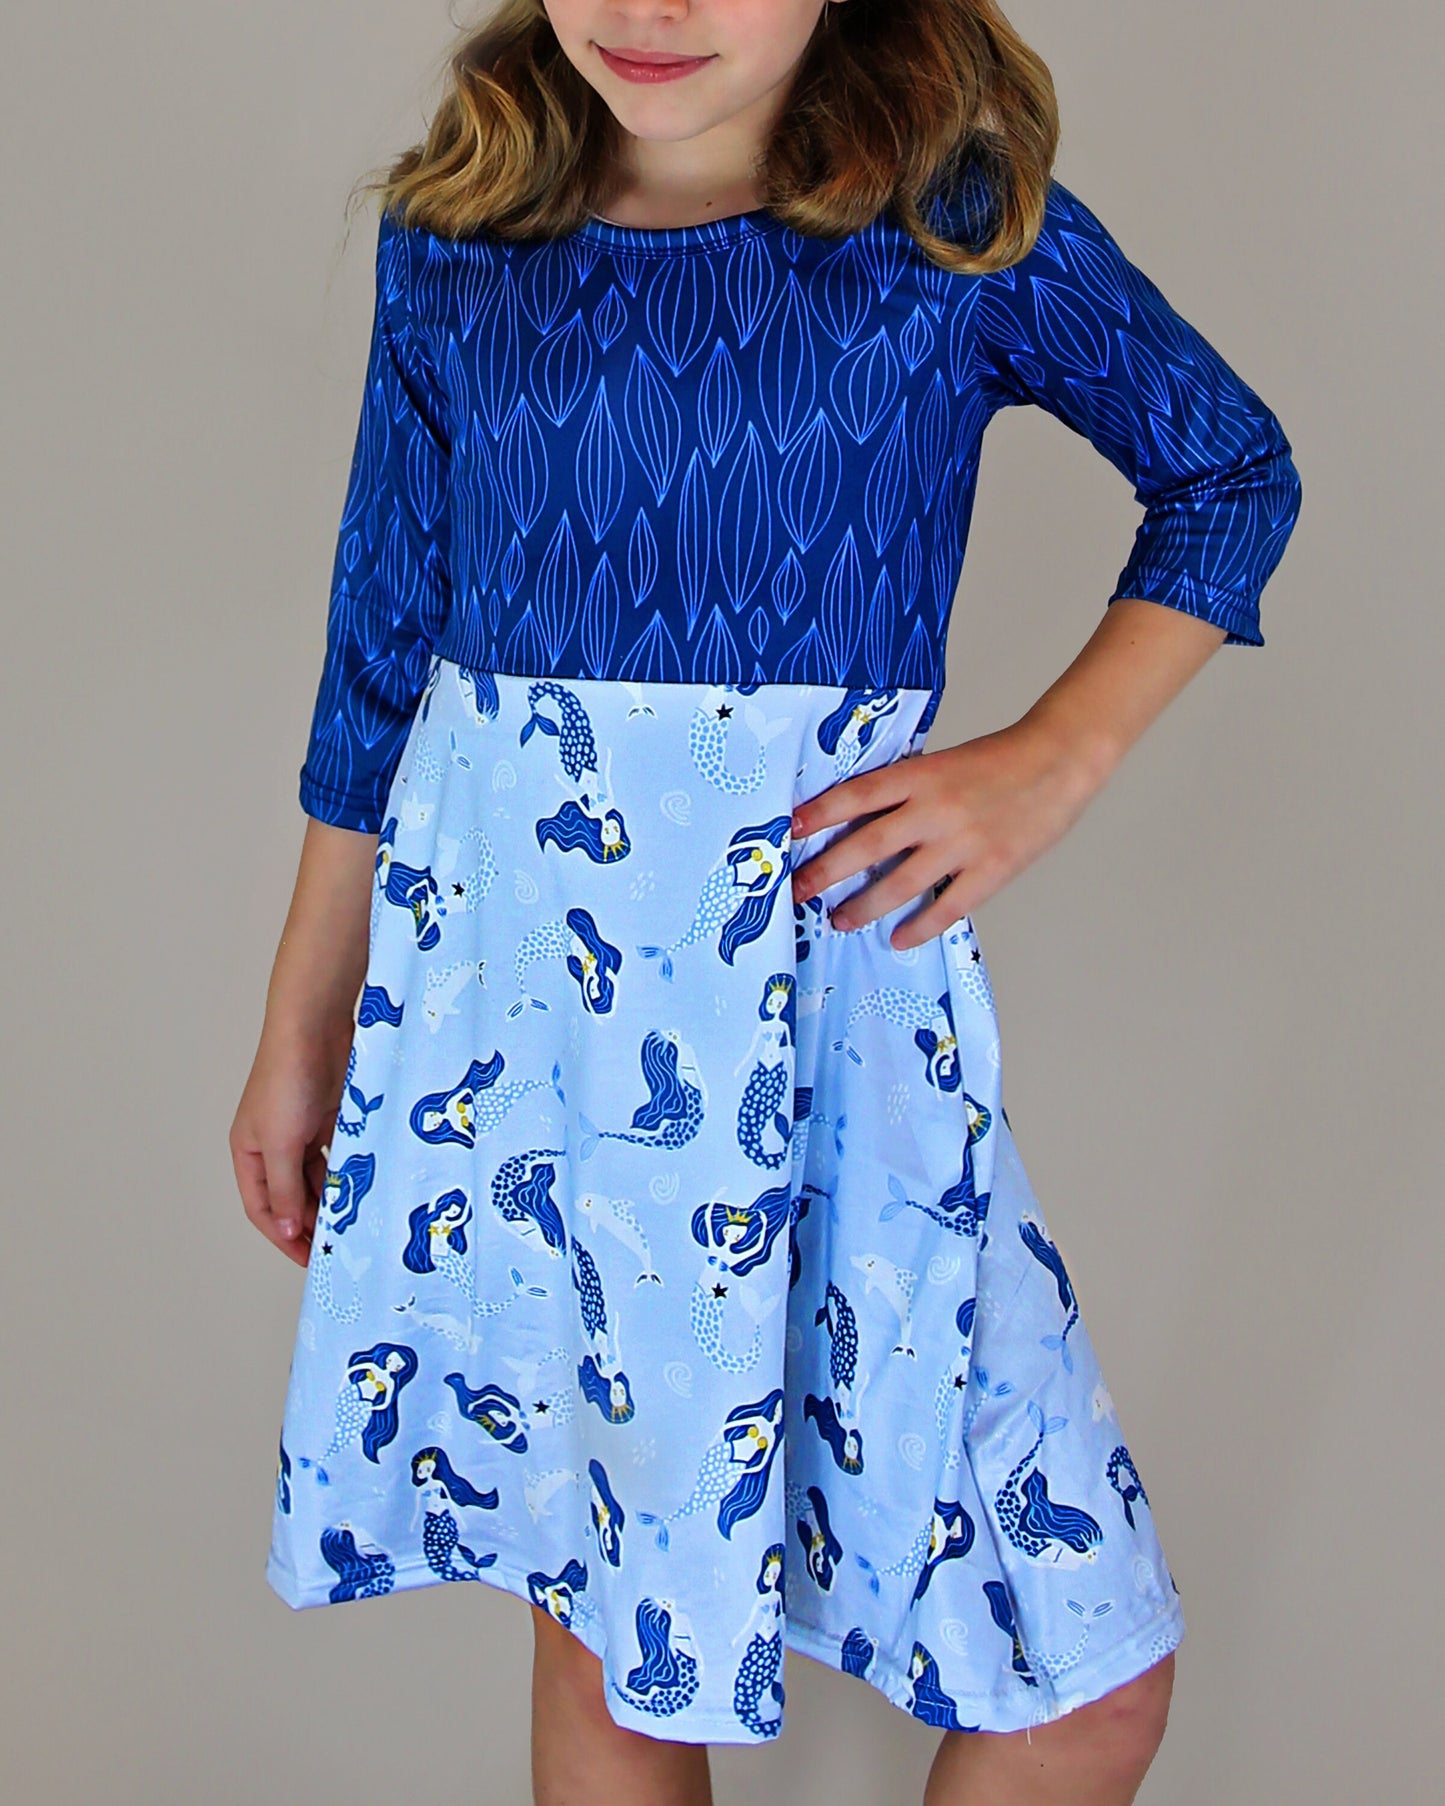 A-Line Dress - Girls Dress - Twirly Dress - Birthday Dress - Party Dress - Blue Mermaid Dress